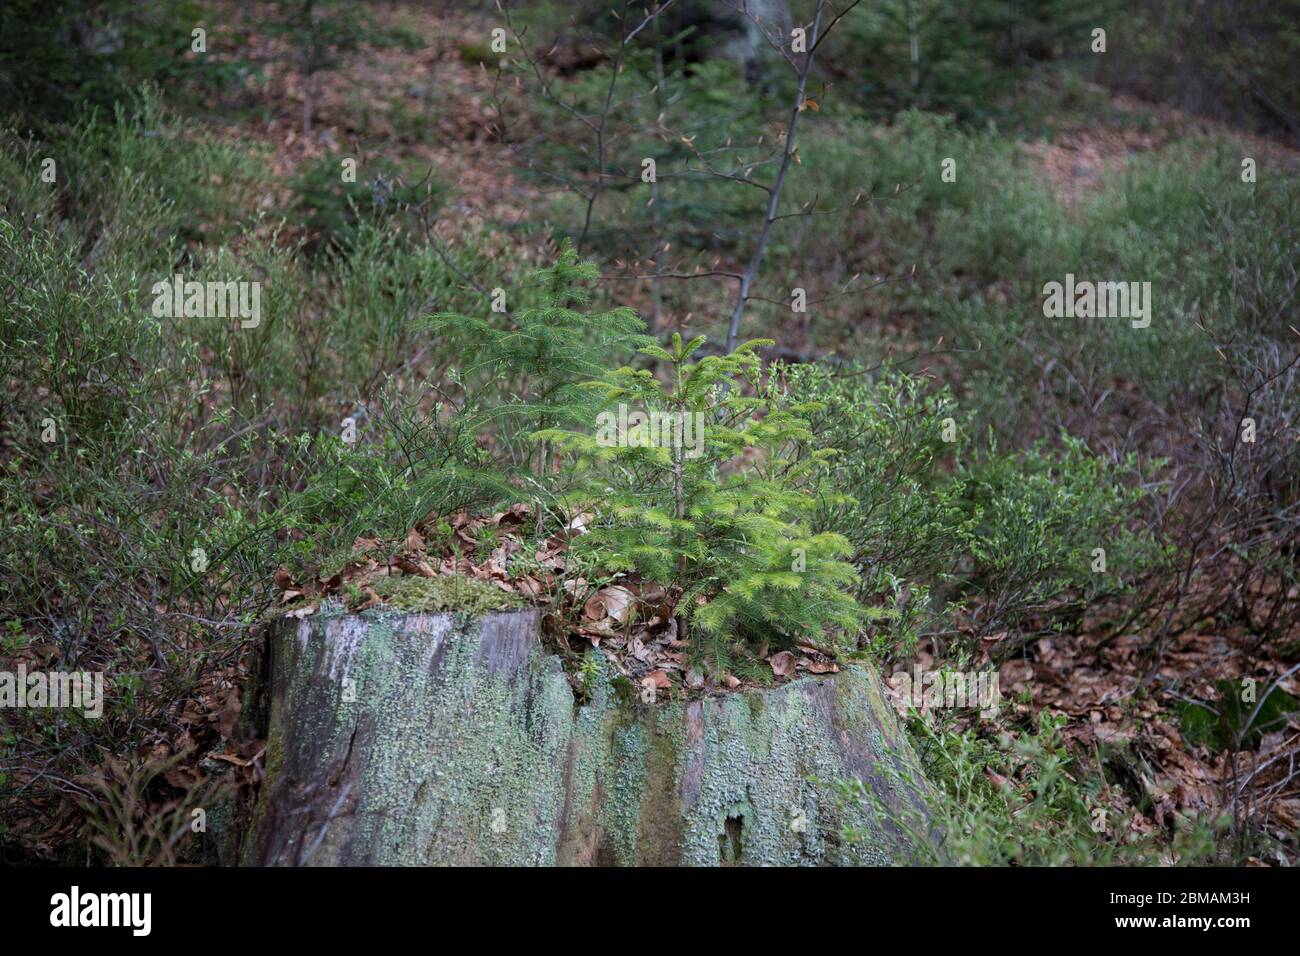 Junge Fichte auf Baumstumpf, Young spruce on tree stump Stock Photo